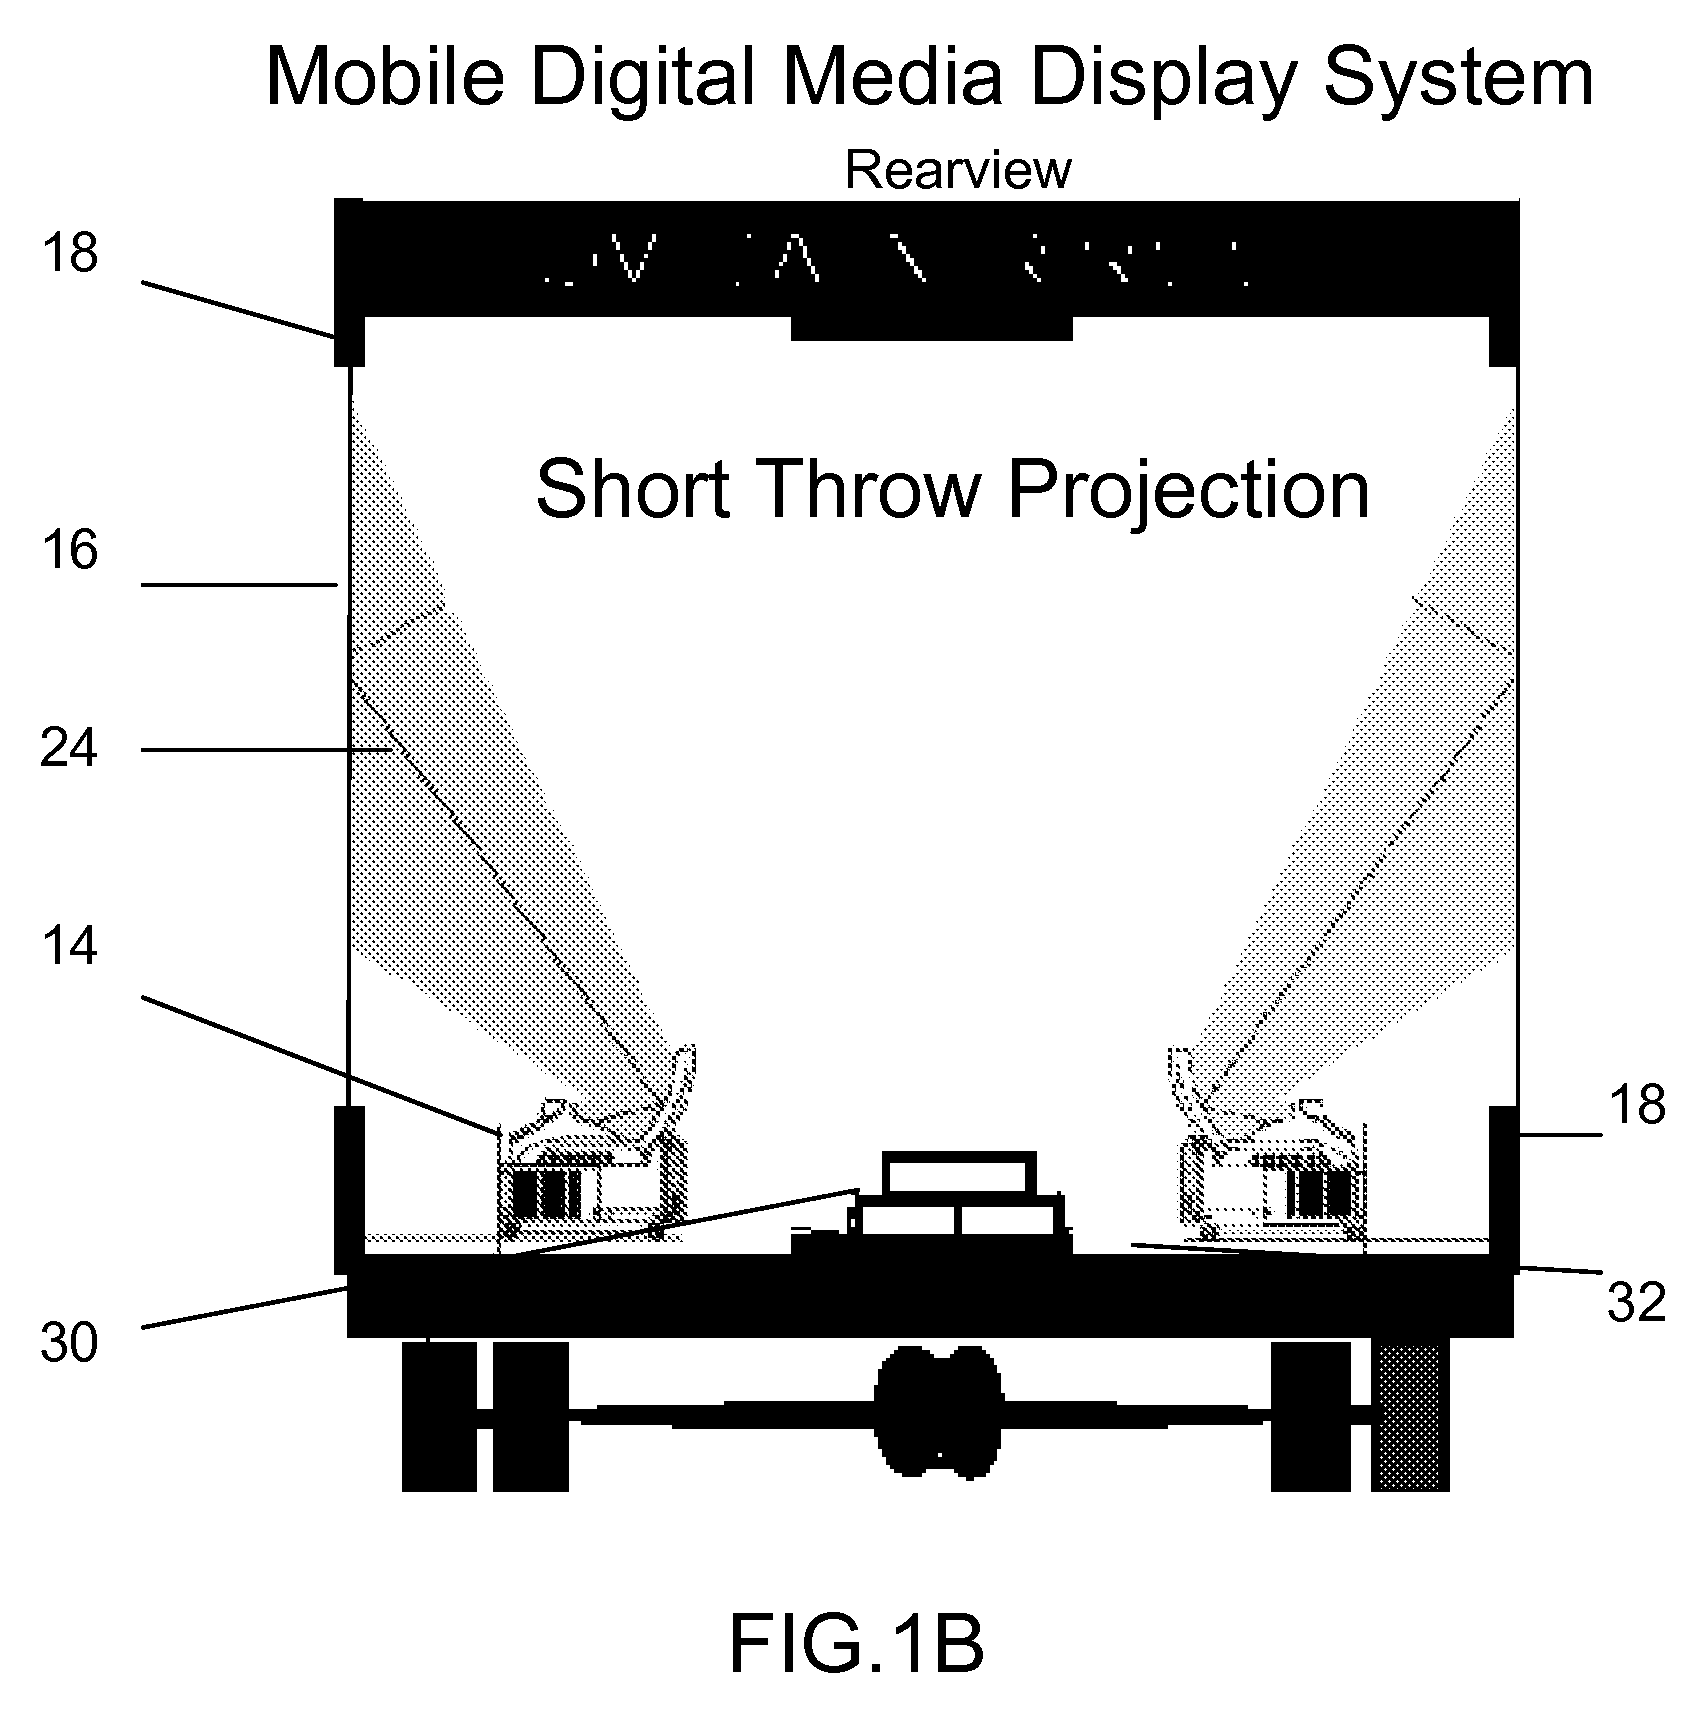 Mobile Digital Media Display System